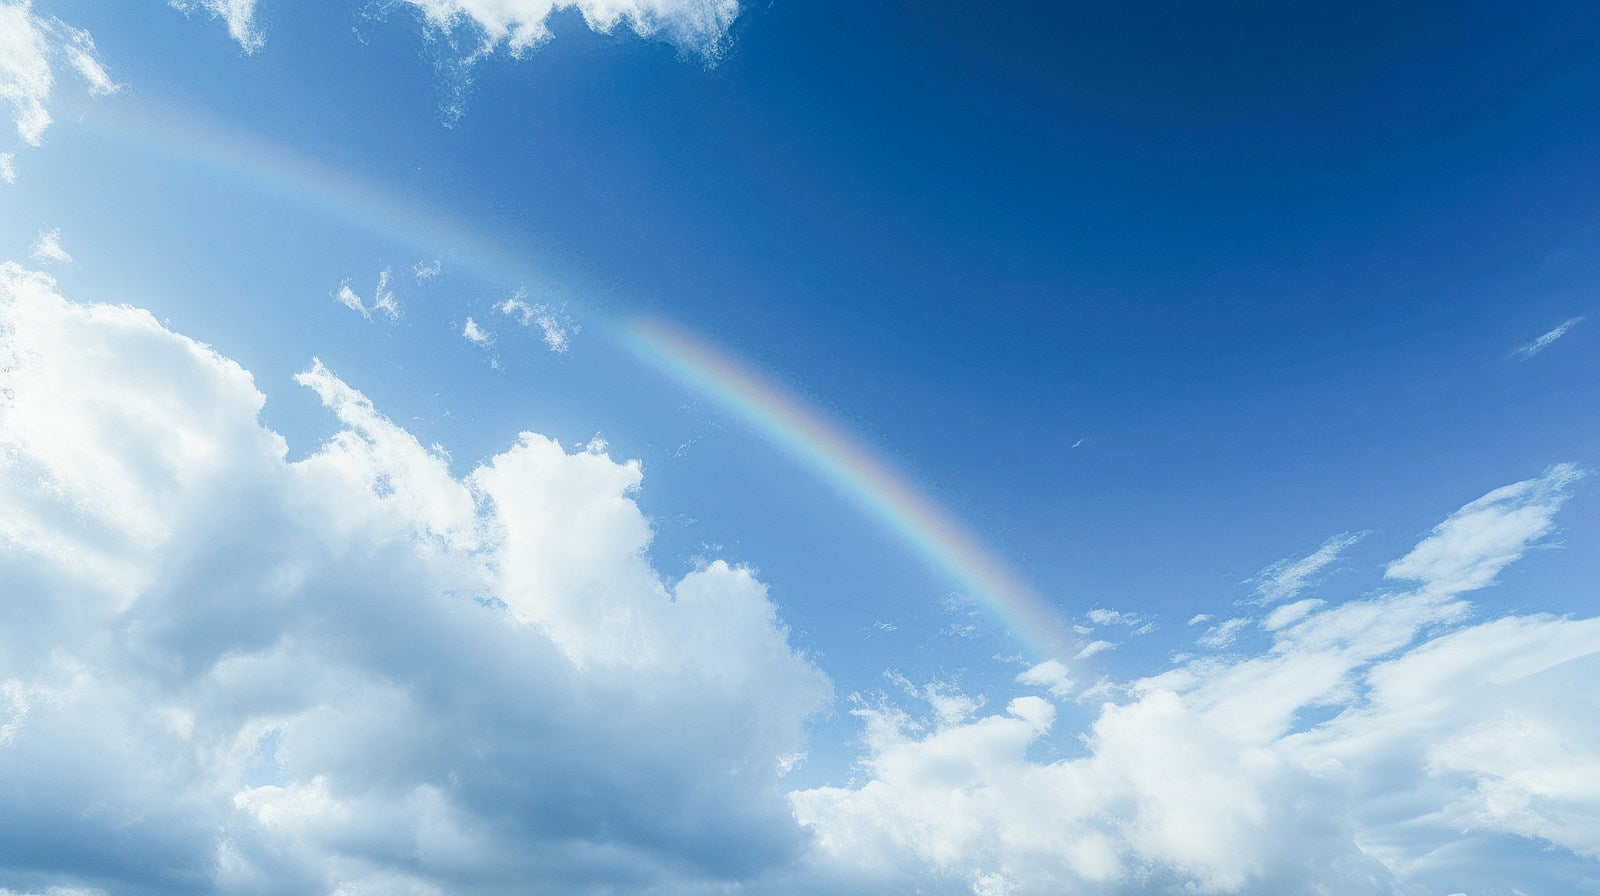 「薄っすらと虹がかかる青空」の写真